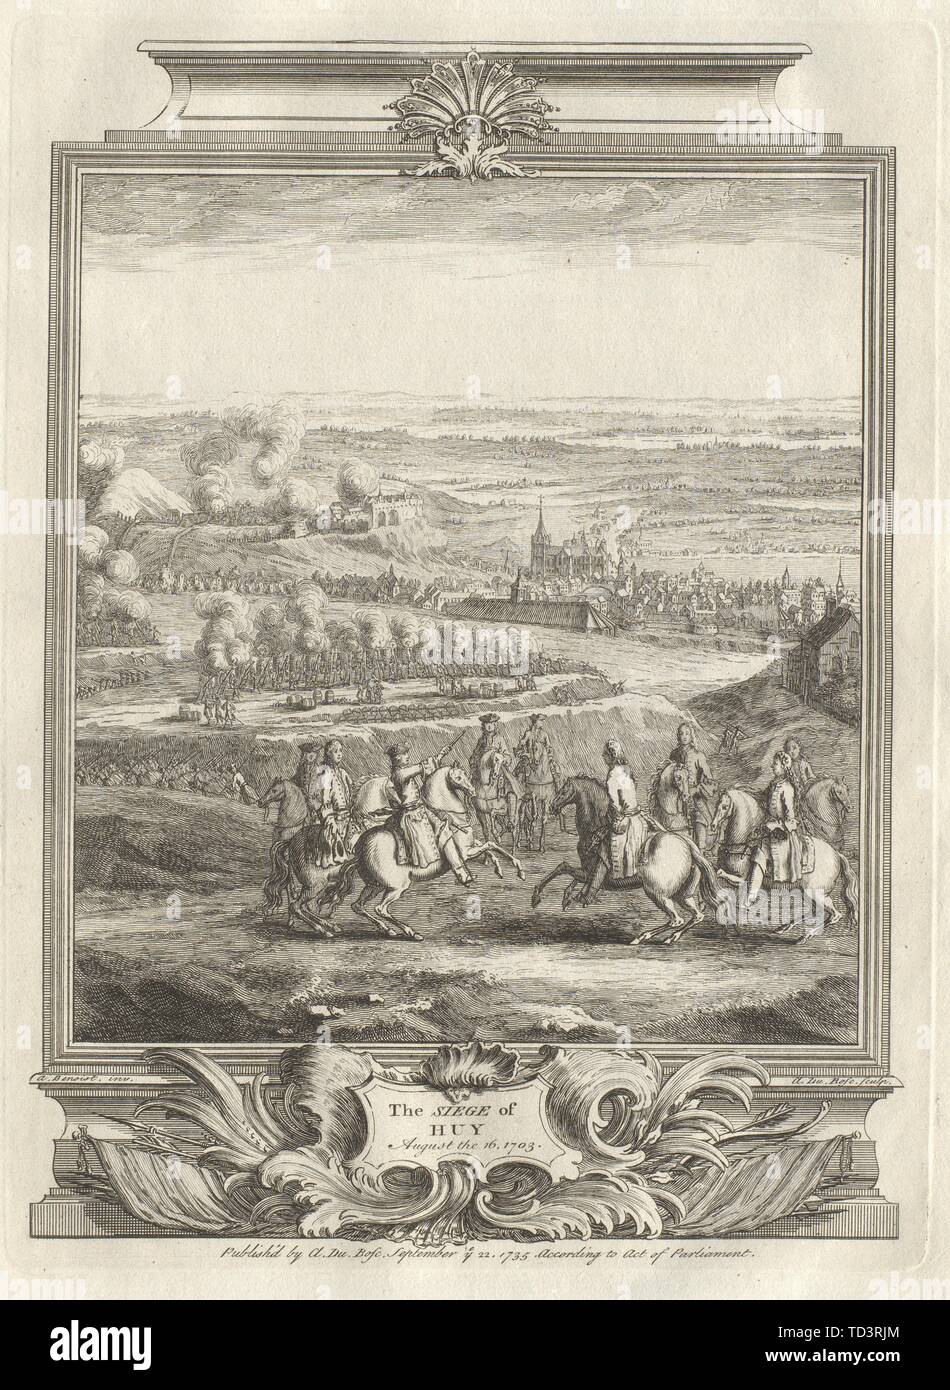 L'Assedio di Huy, Agosto 16, 1703. Belgio 1736 antica immagine di stampa Foto Stock